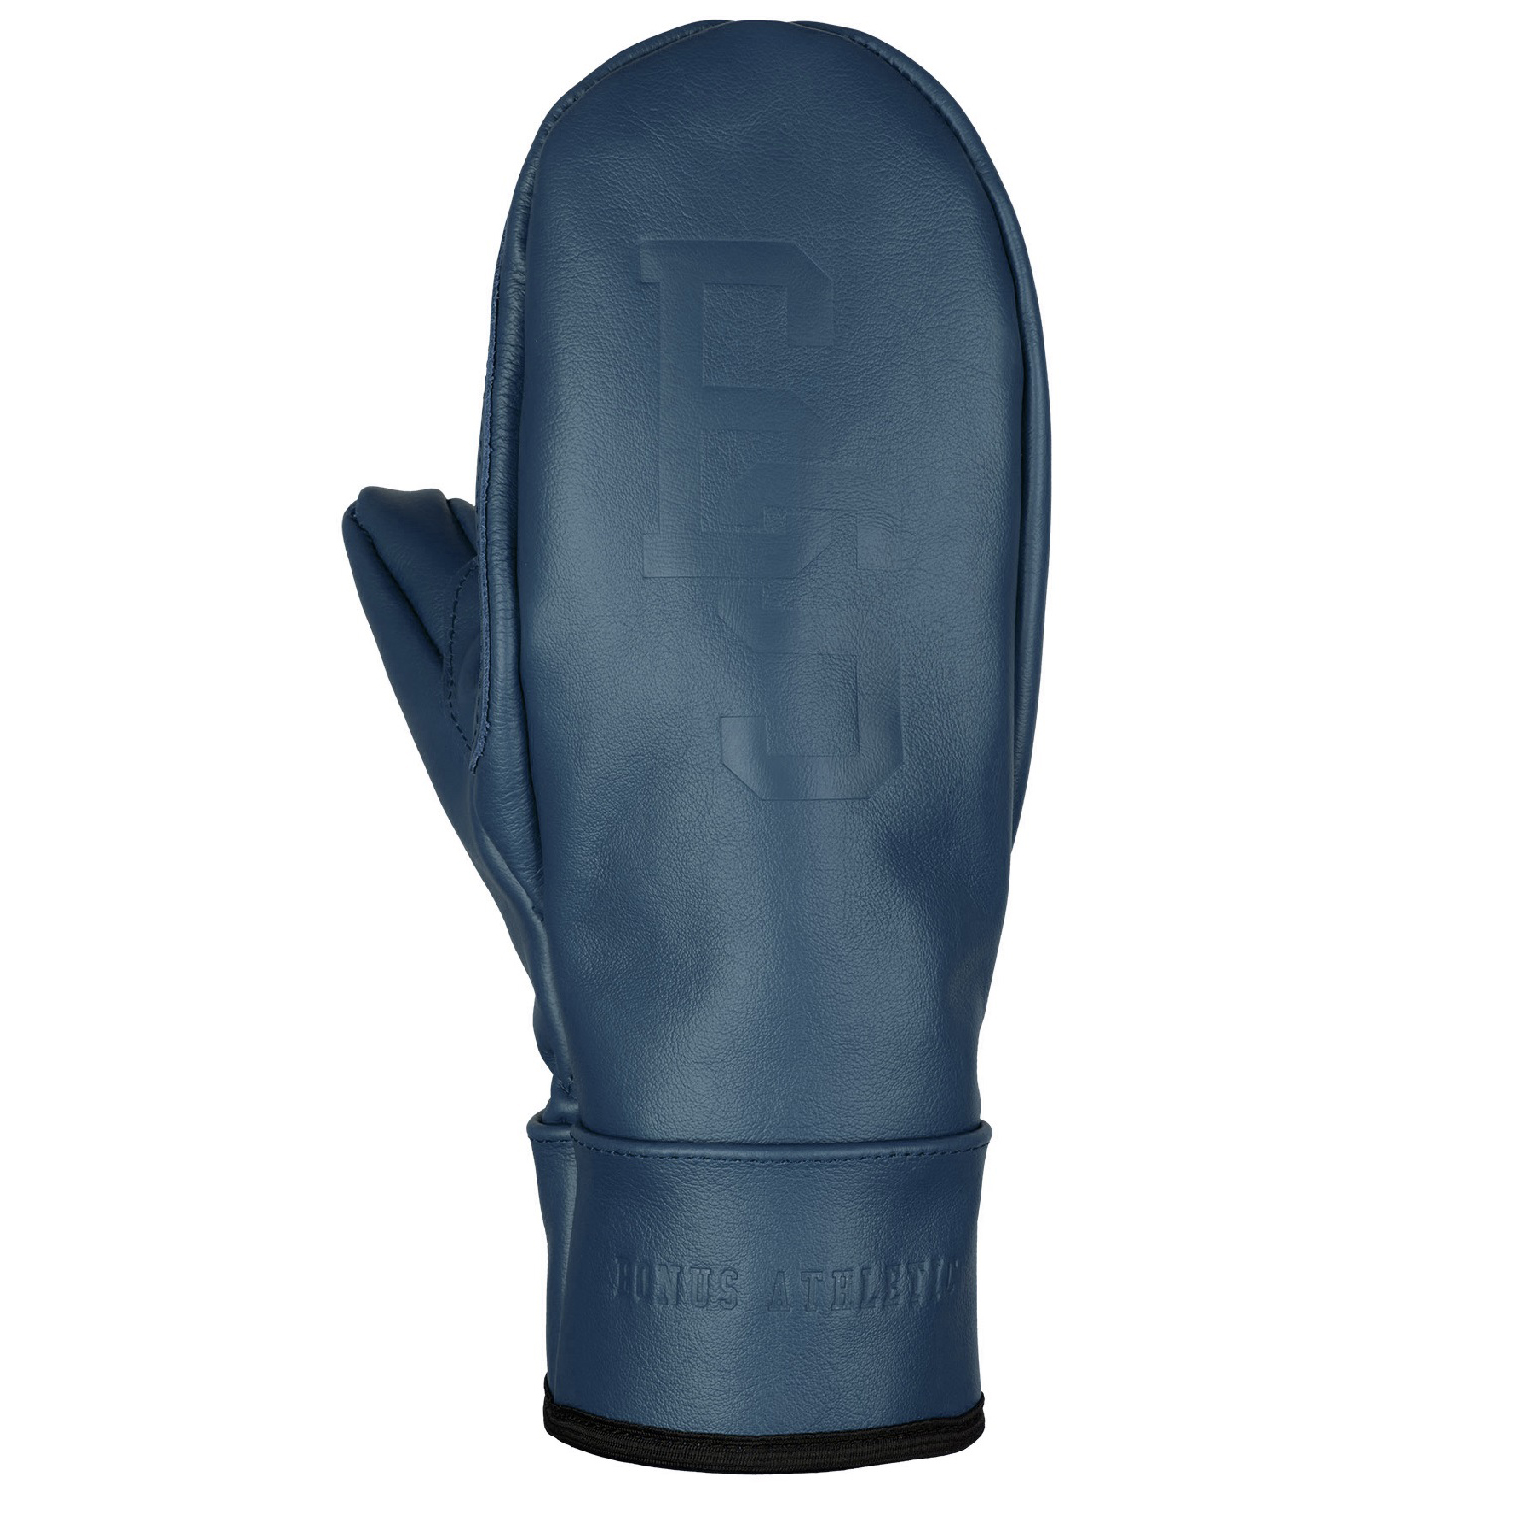 Варежки Bonus Gloves 20-21 Athletic Leather Navy, размер M - фото 3